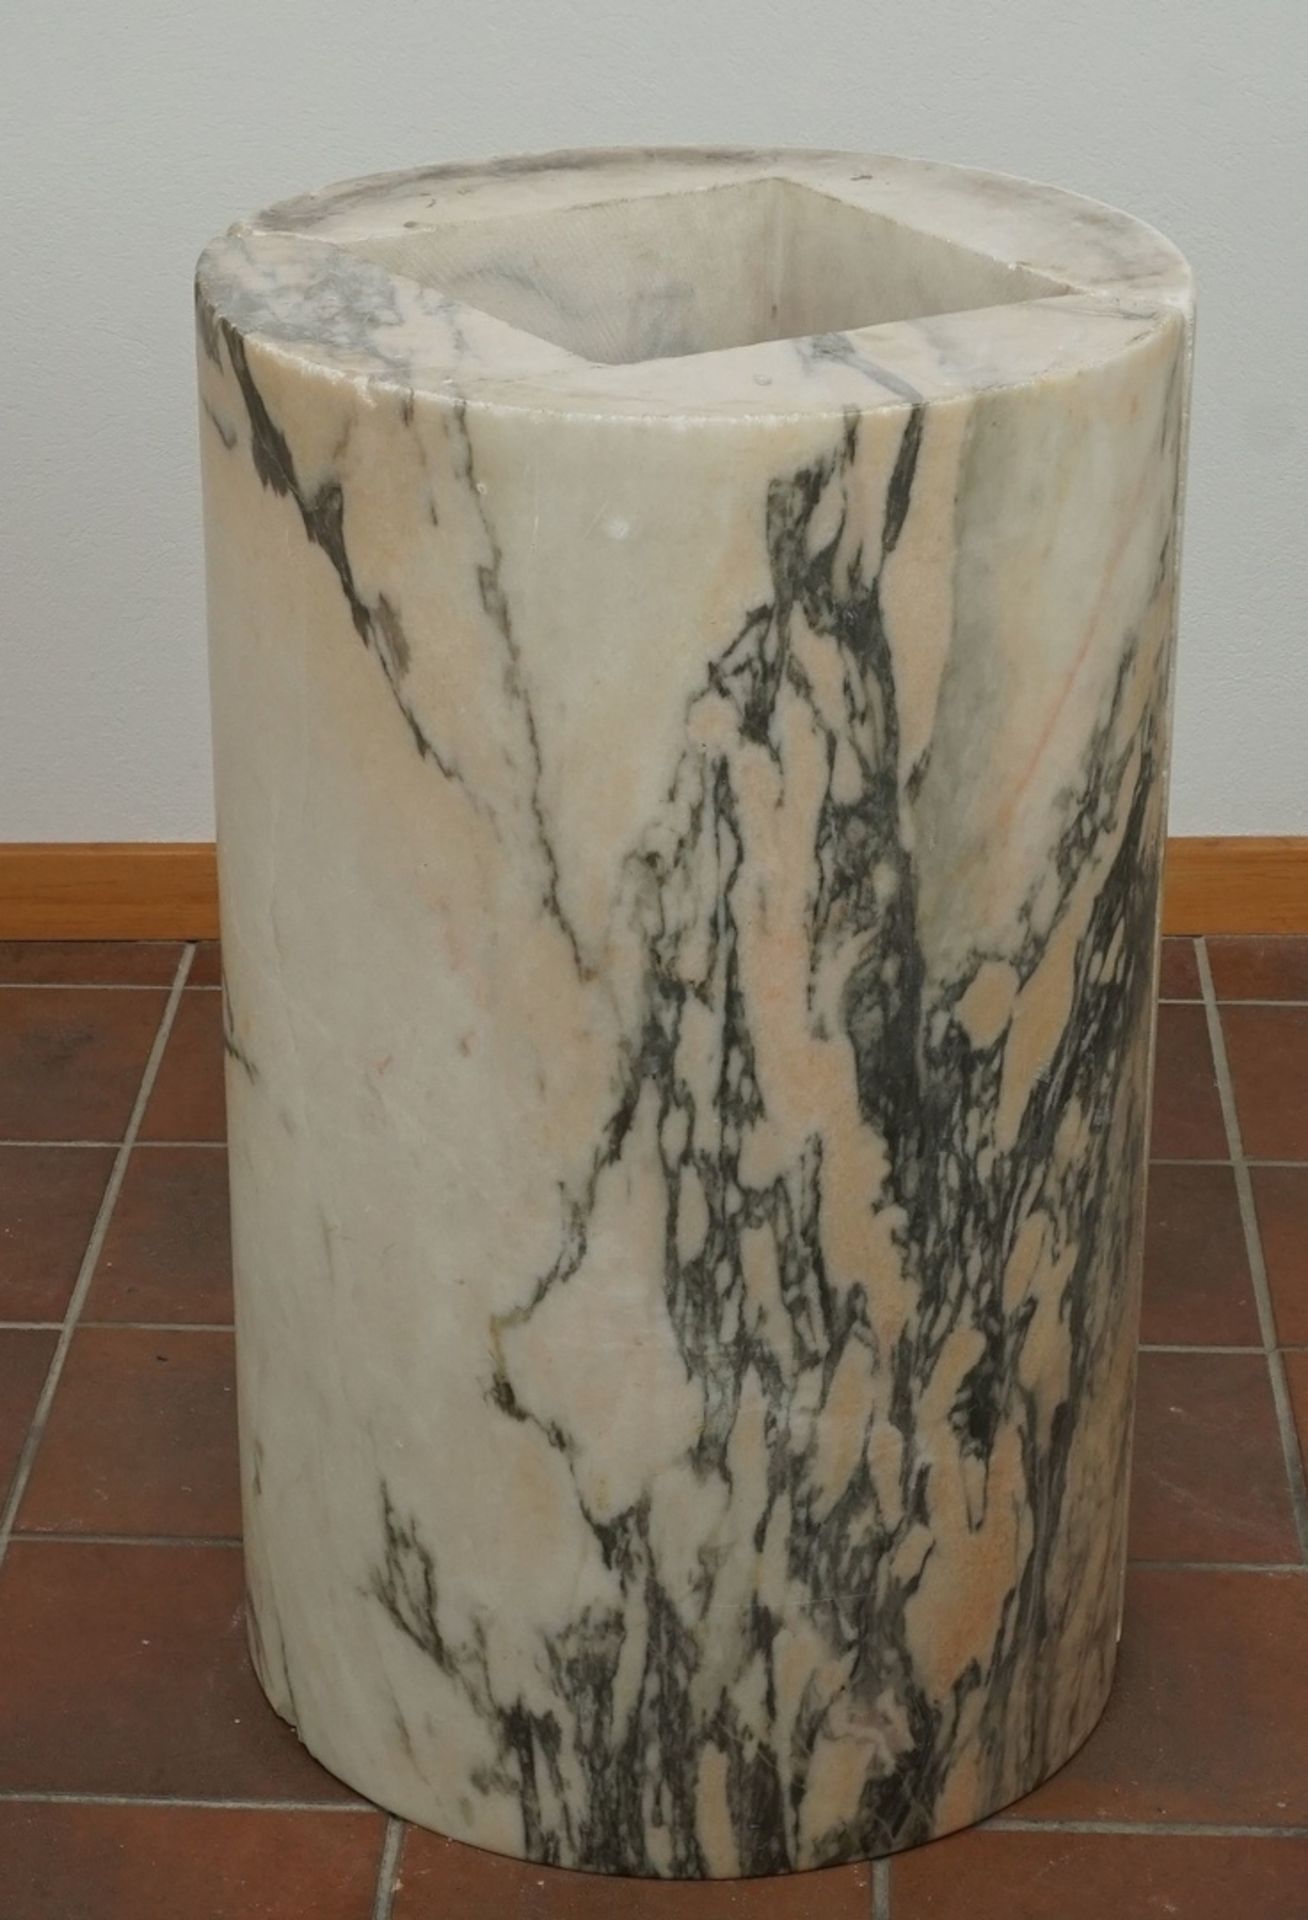 Marmor Stele / Postamentzweiteilig, schwarz-weiß-grün-orange marmoriert, altersgemäßer Zustand,